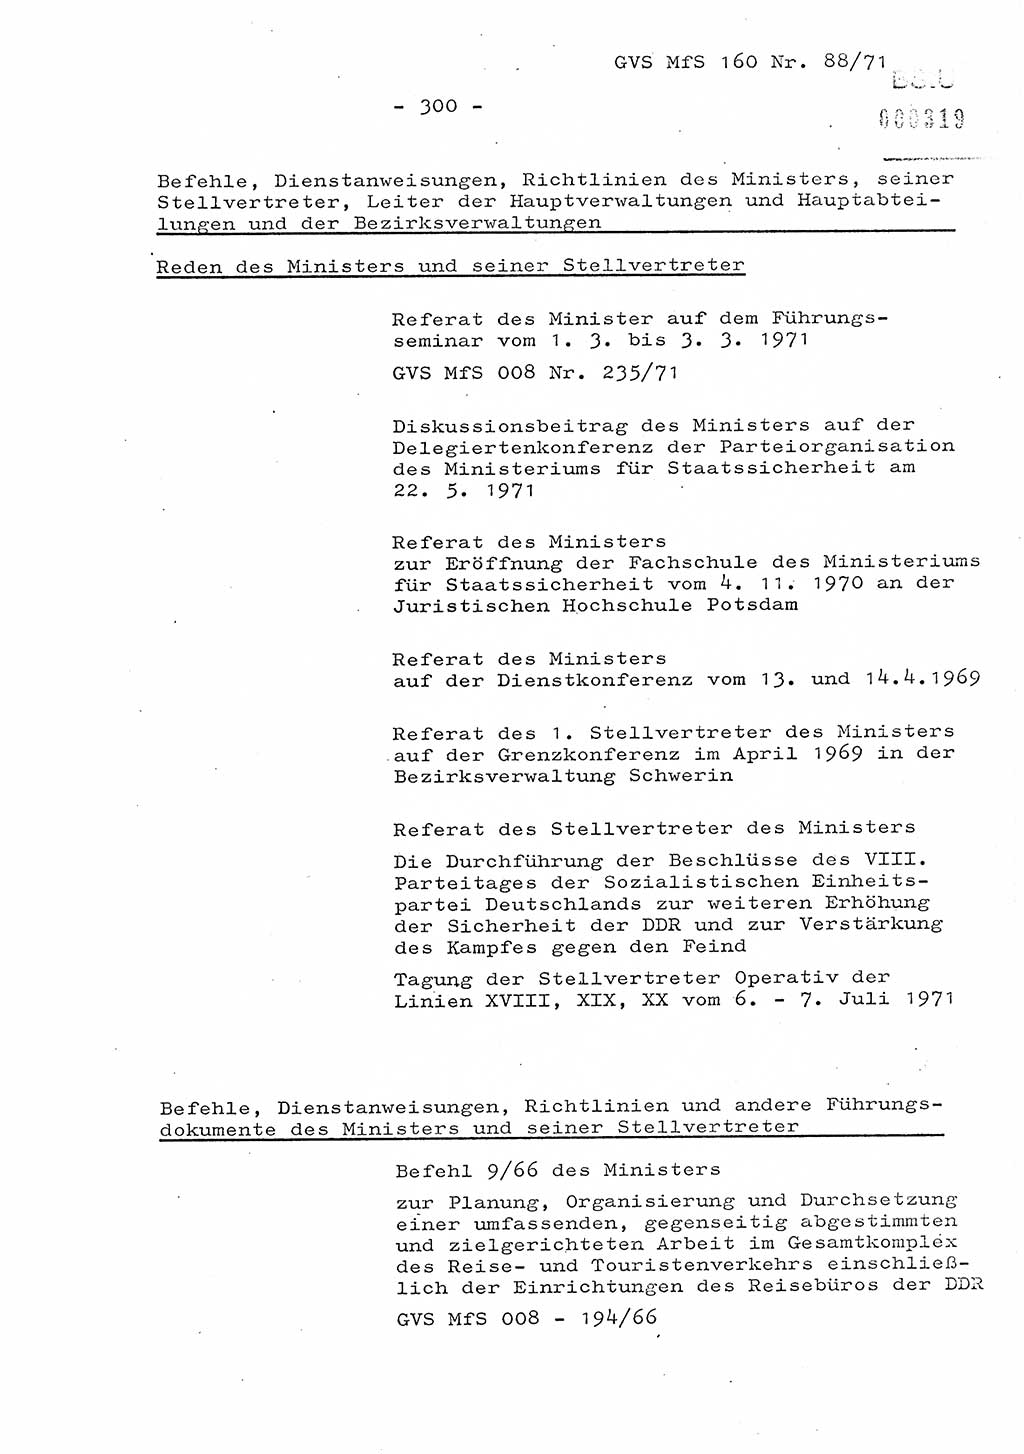 Dissertation Oberstleutnant Josef Schwarz (BV Schwerin), Major Fritz Amm (JHS), Hauptmann Peter Gräßler (JHS), Ministerium für Staatssicherheit (MfS) [Deutsche Demokratische Republik (DDR)], Juristische Hochschule (JHS), Geheime Verschlußsache (GVS) 160-88/71, Potsdam 1972, Seite 300 (Diss. MfS DDR JHS GVS 160-88/71 1972, S. 300)